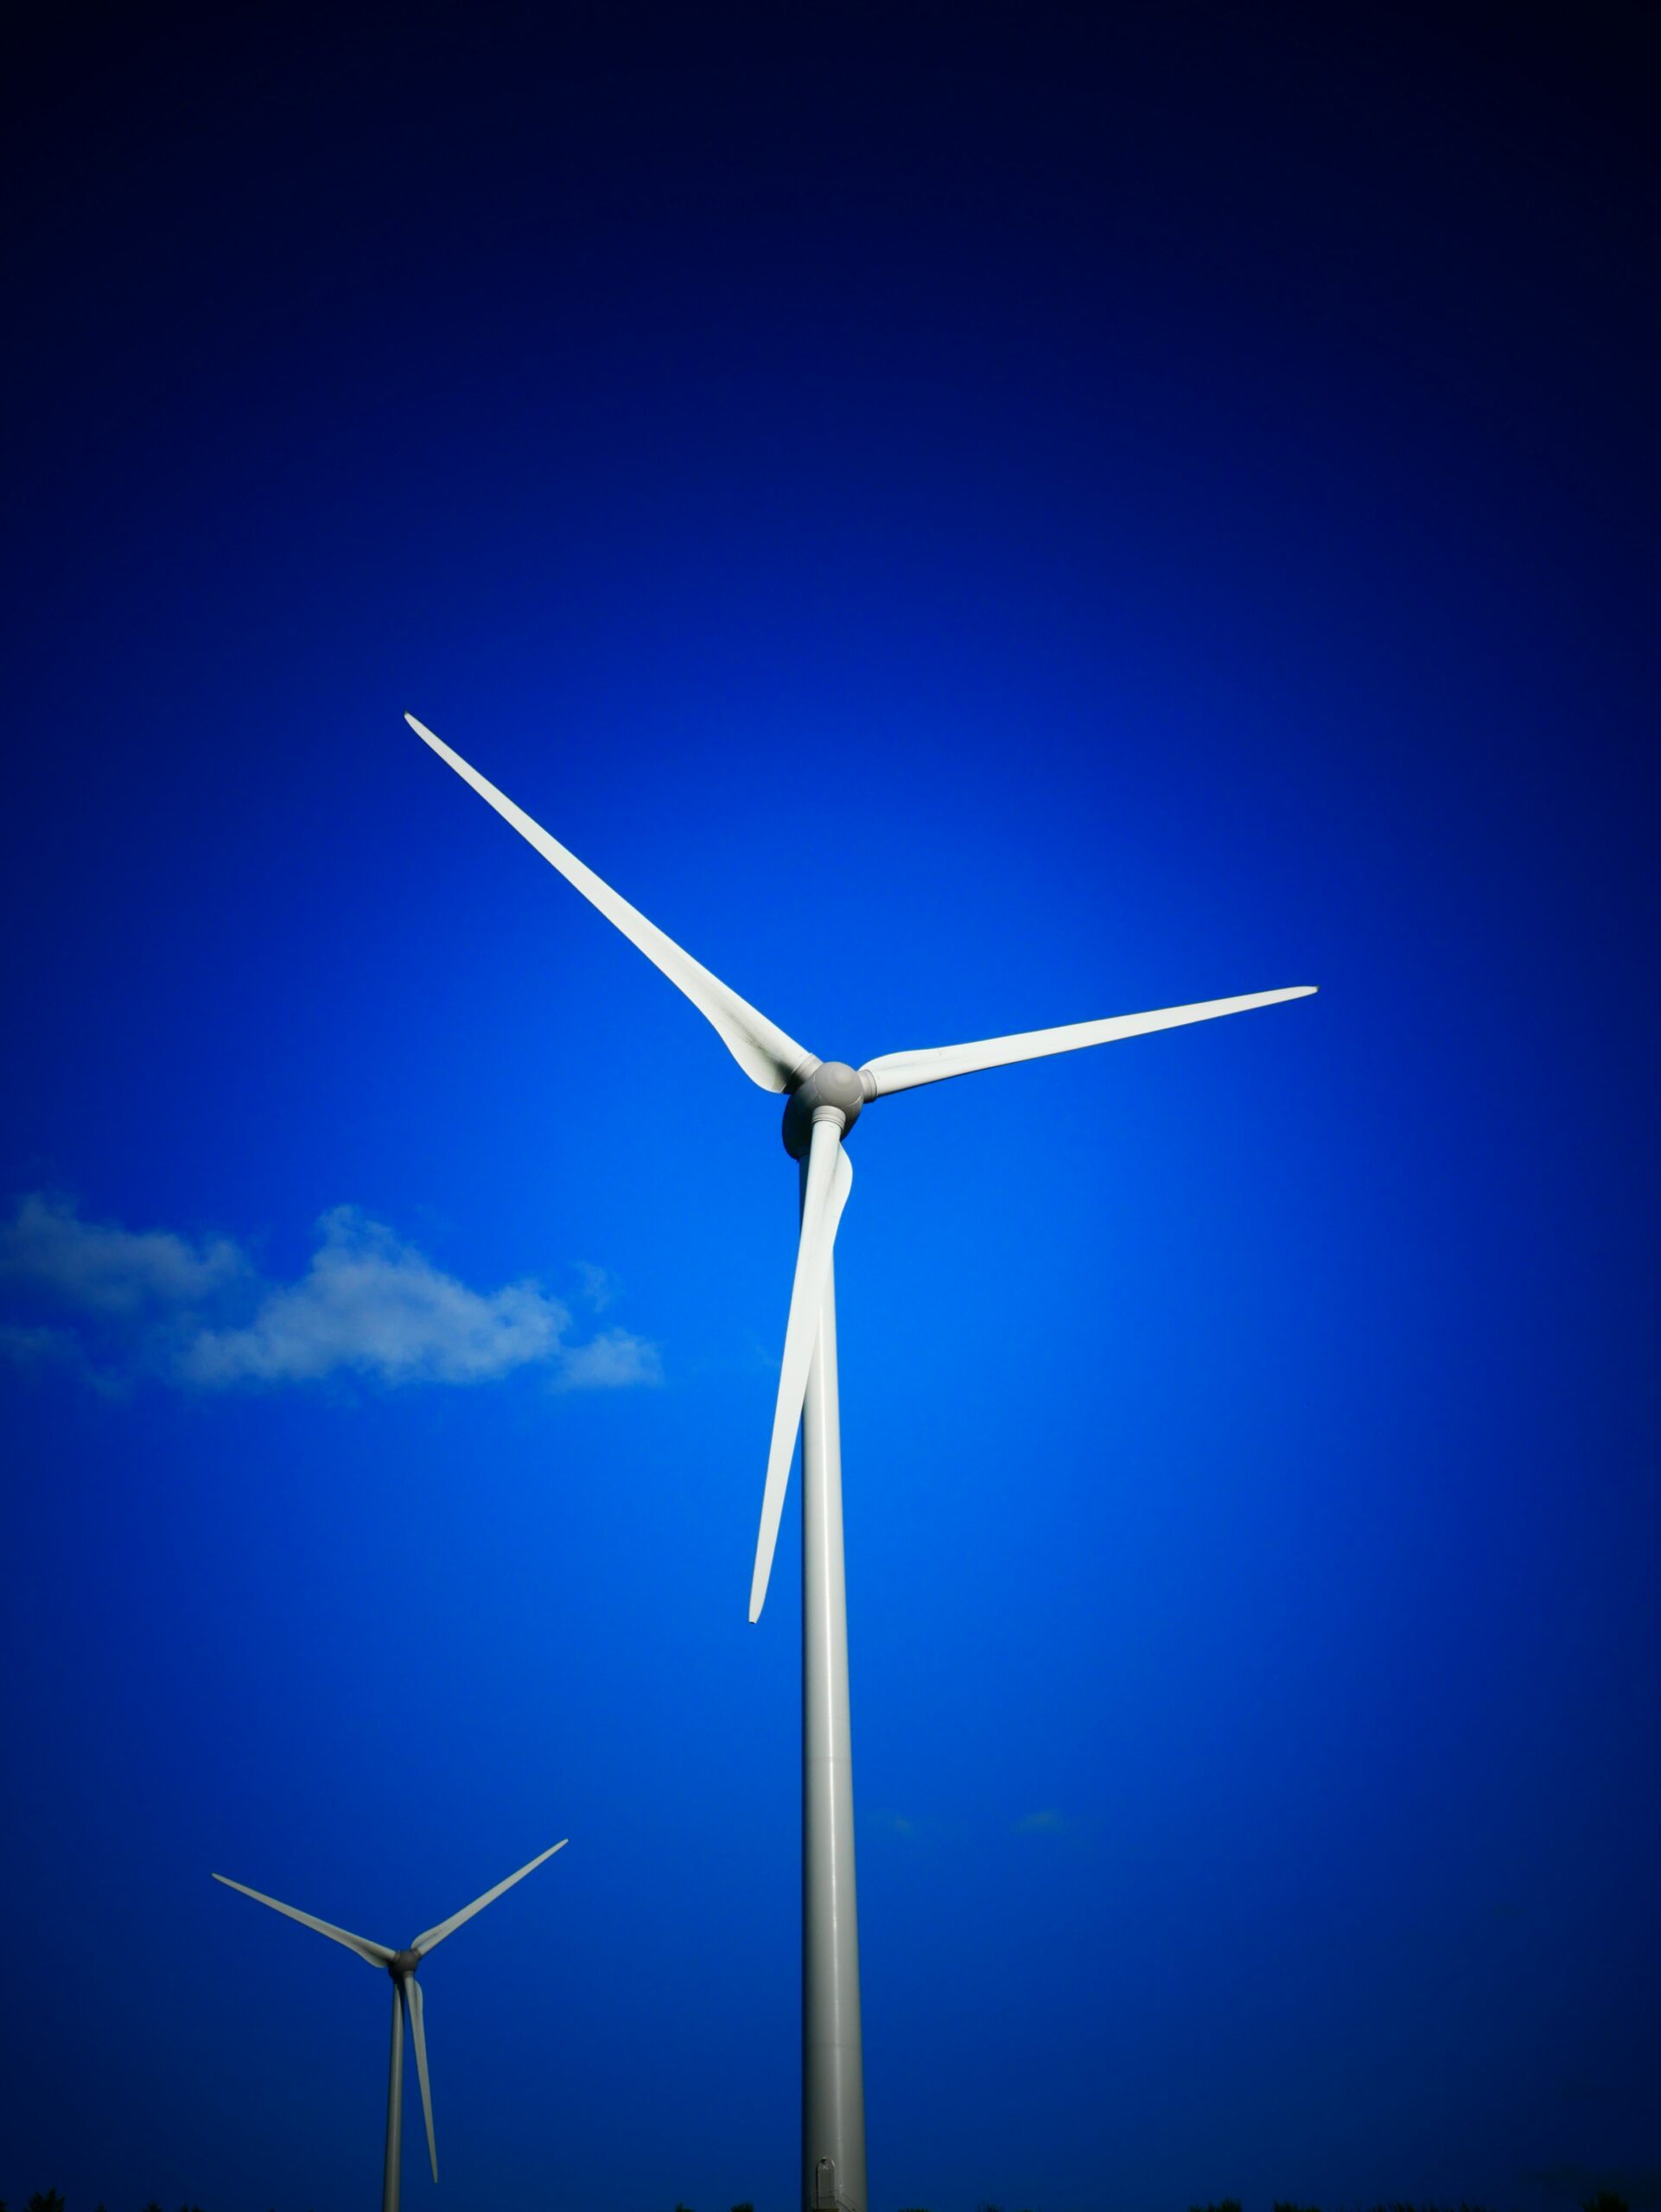 Private Windkraftanlage: Windenergie selbst produzieren